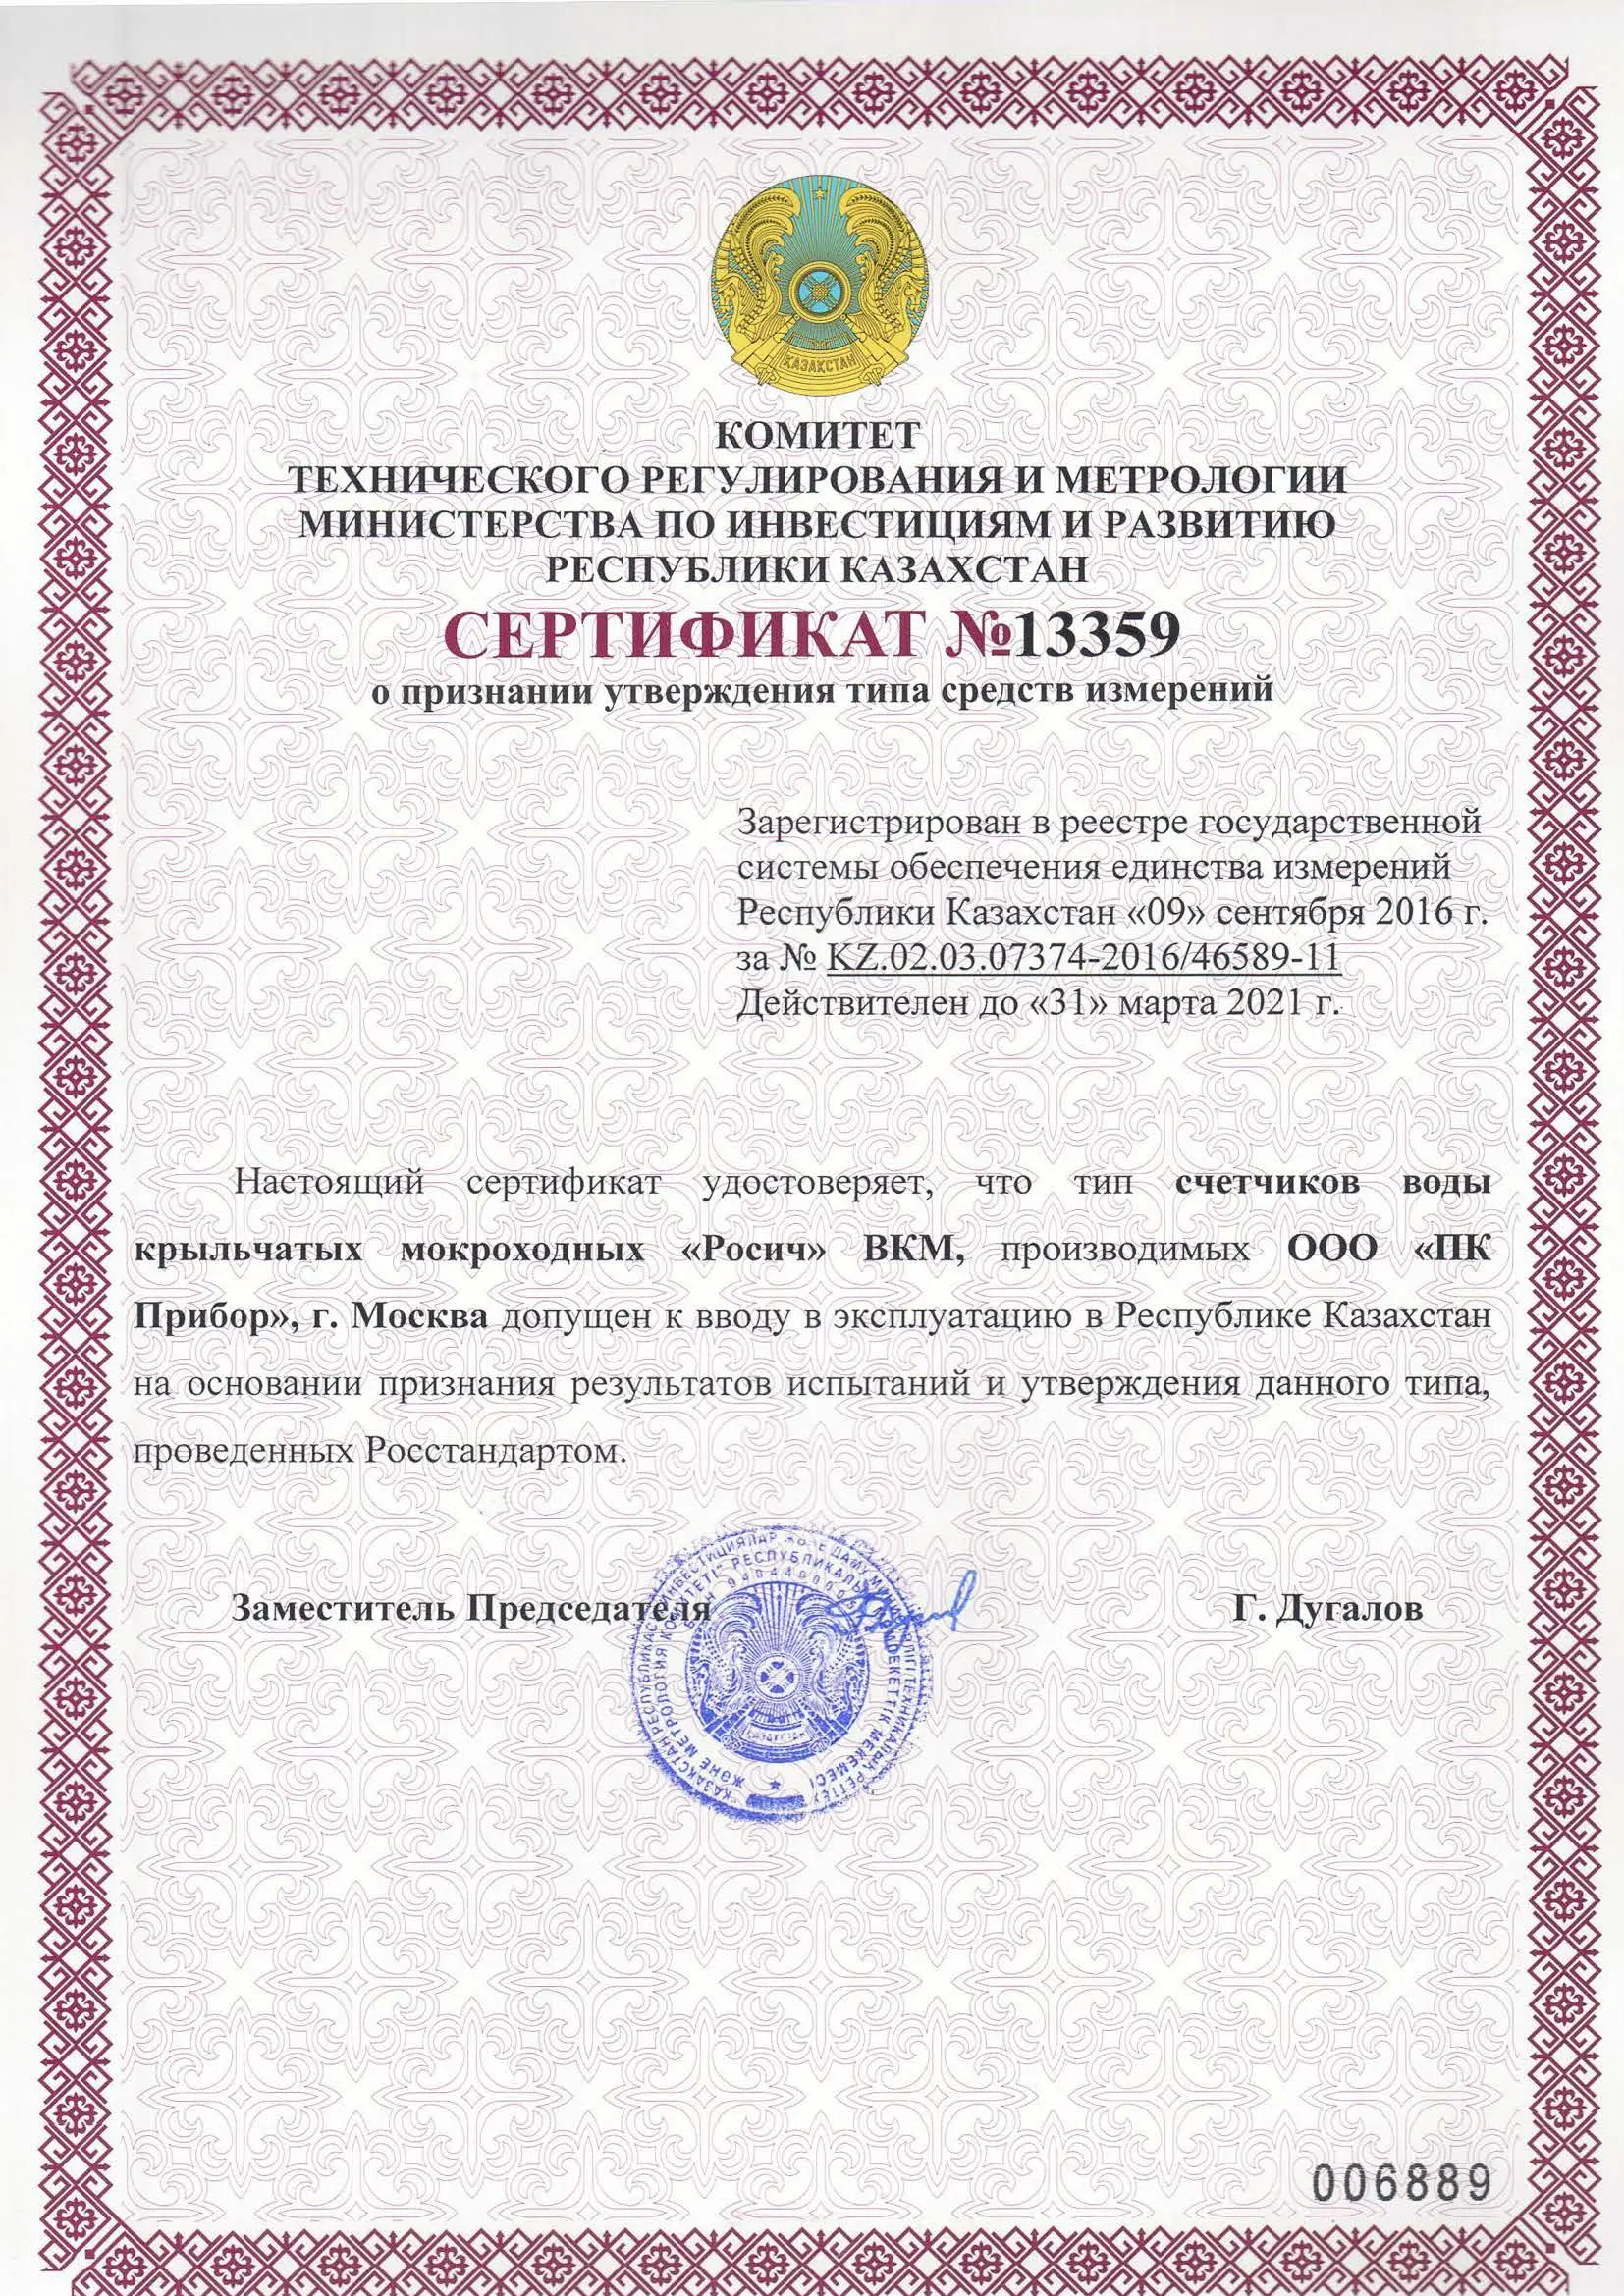 Сертификат о признании утверждения типа ВКМ "Росич", Казахстан, до 31.03.2021 (архив, см. свидетельство Декаст)